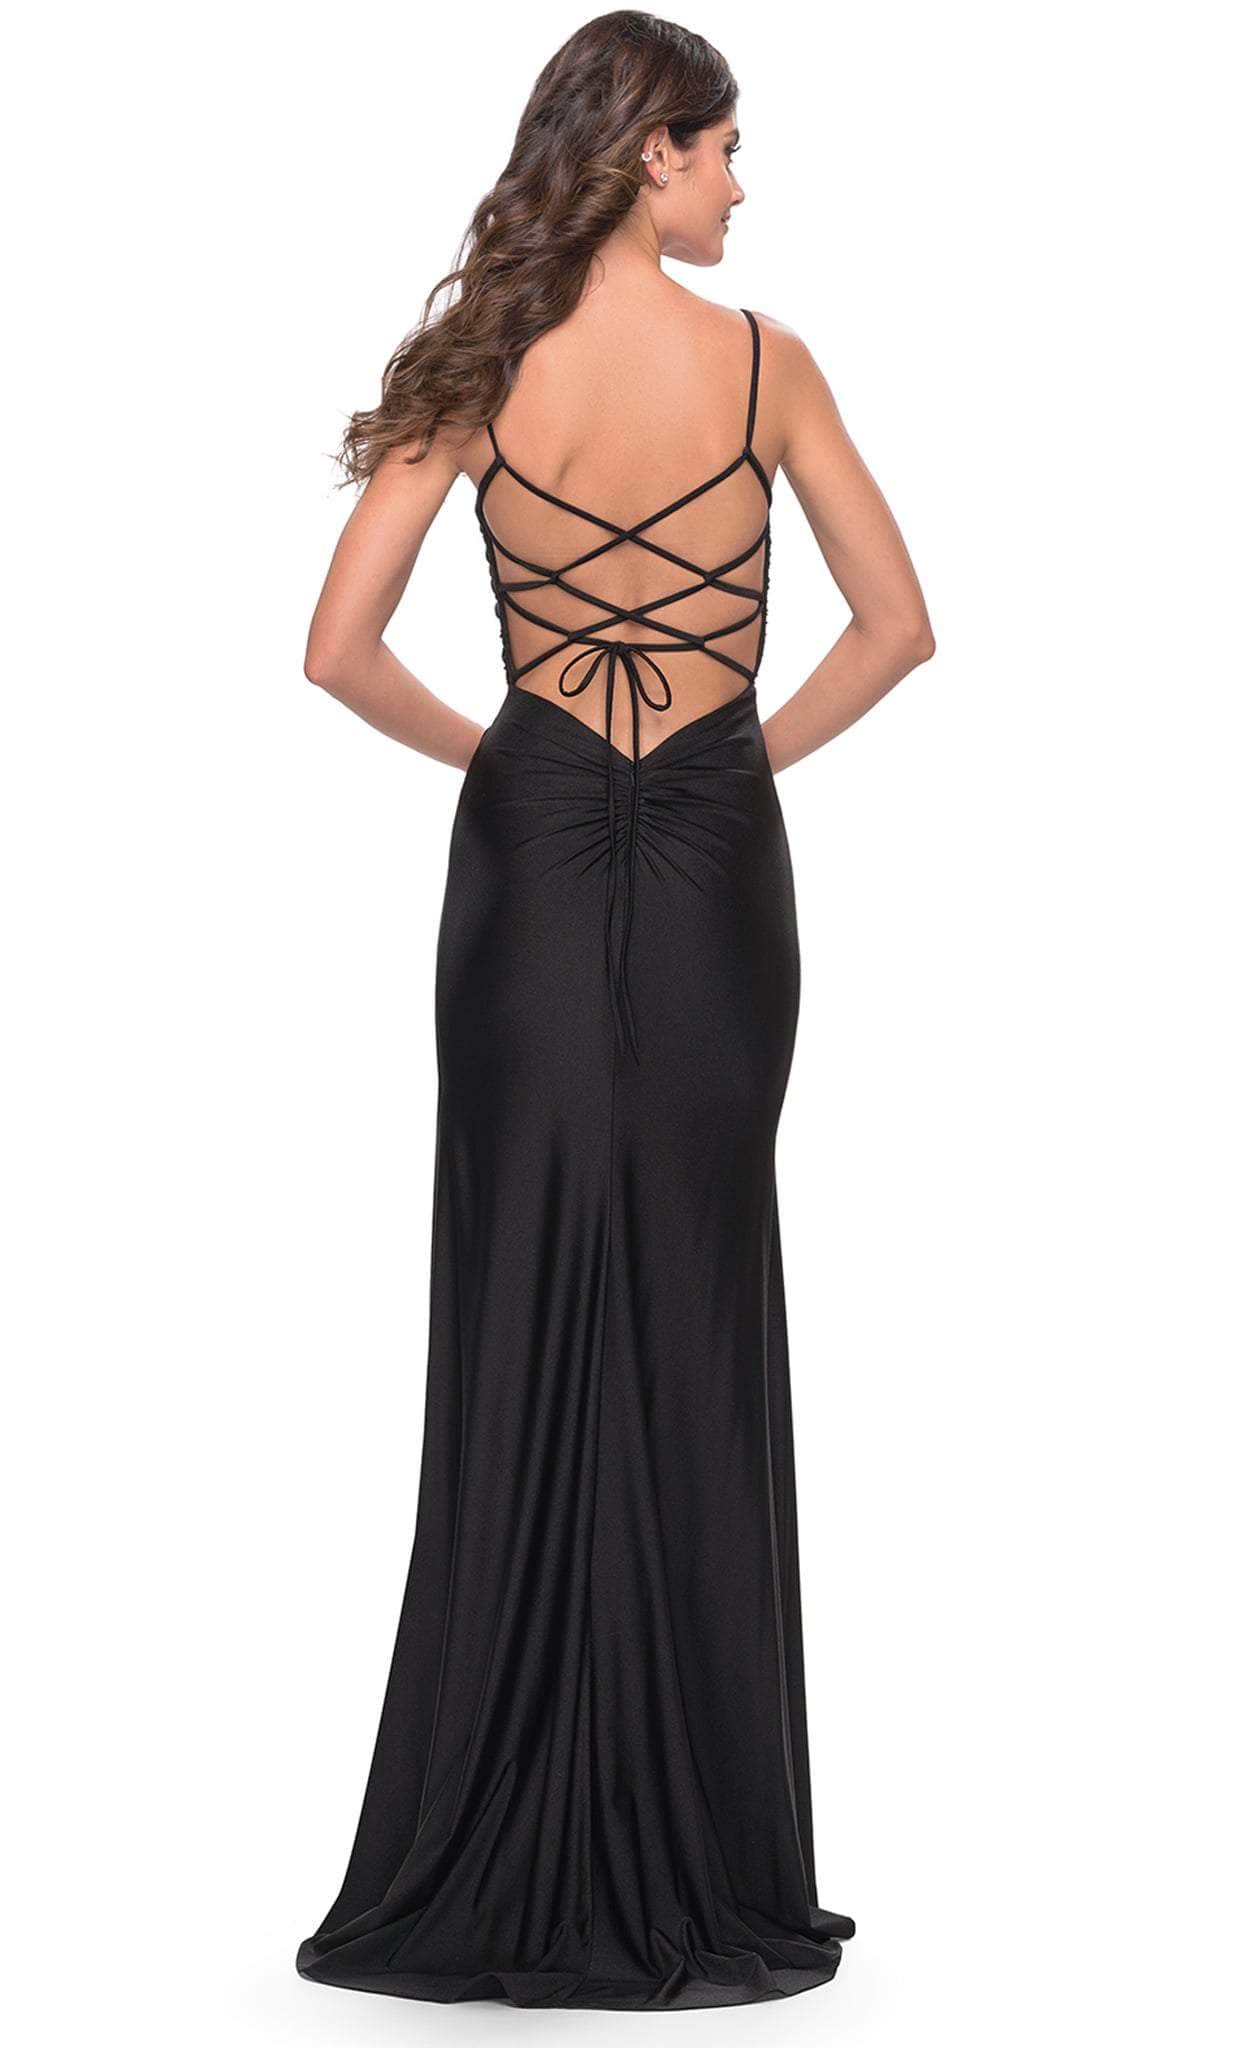 La Femme 31332 - Side Cutout Dress